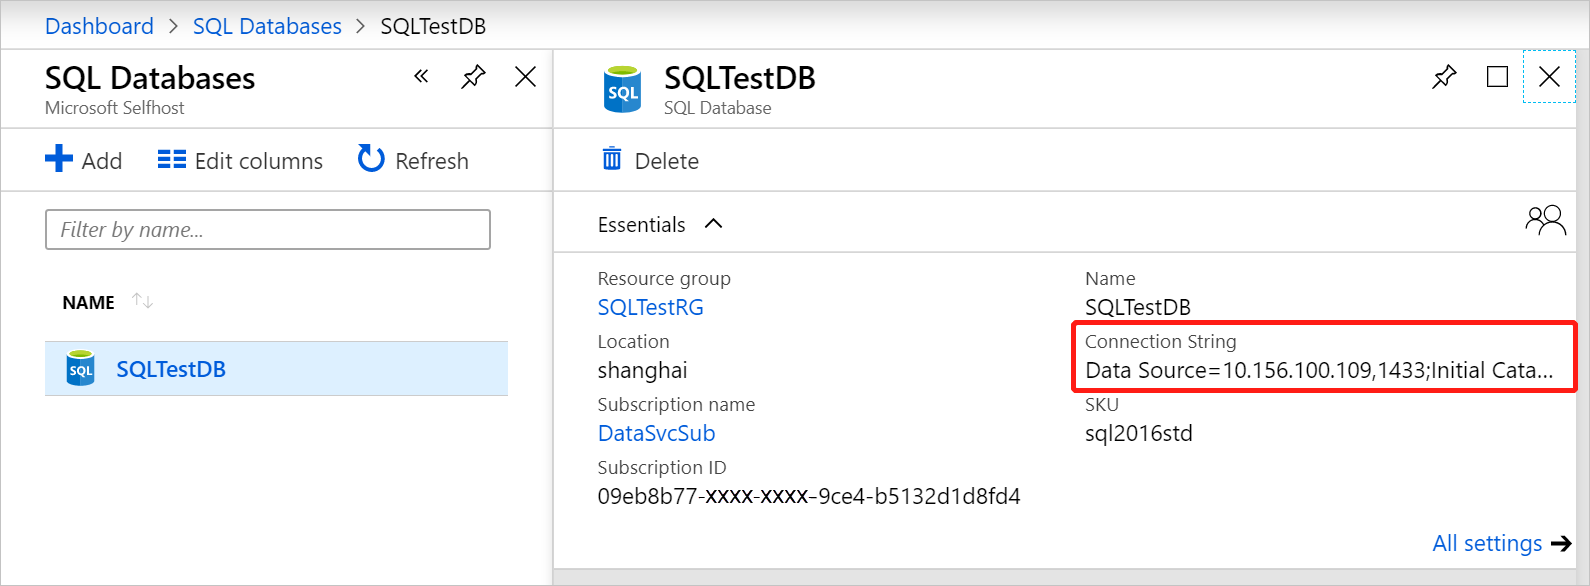 检索 SQL Server 数据库的连接字符串